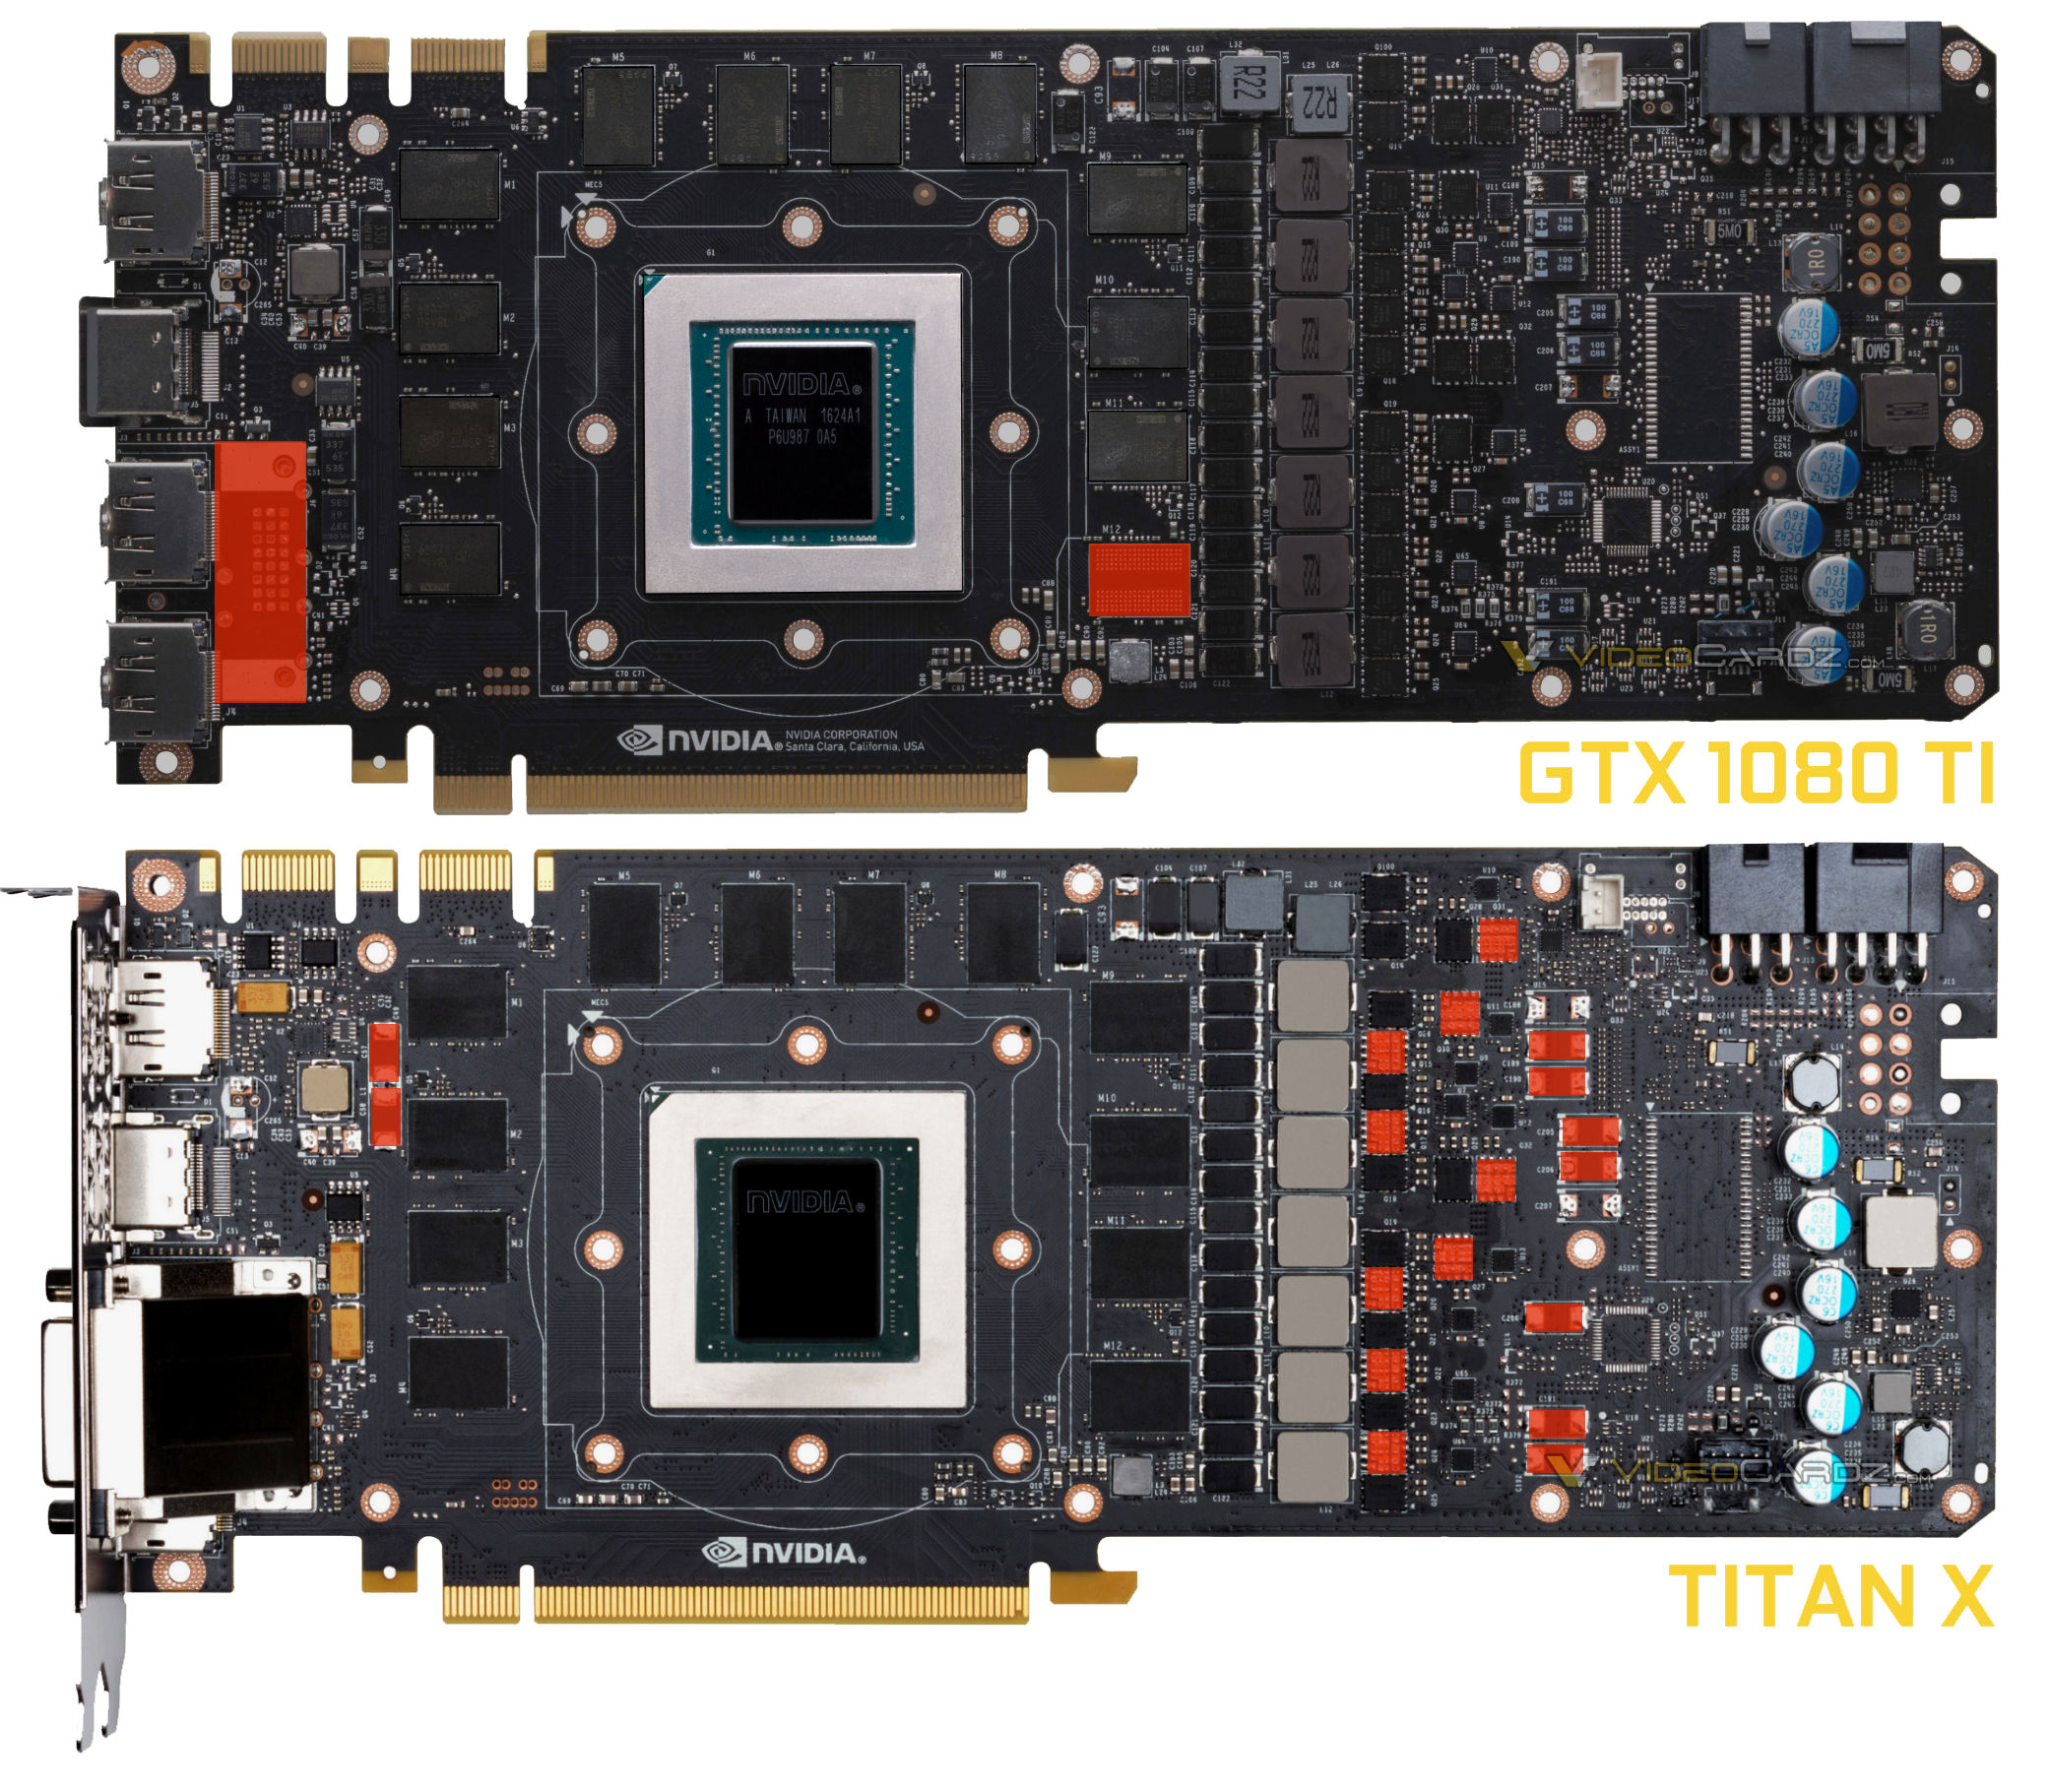 NVIDIA GeForce GTX 1080 Ti features 